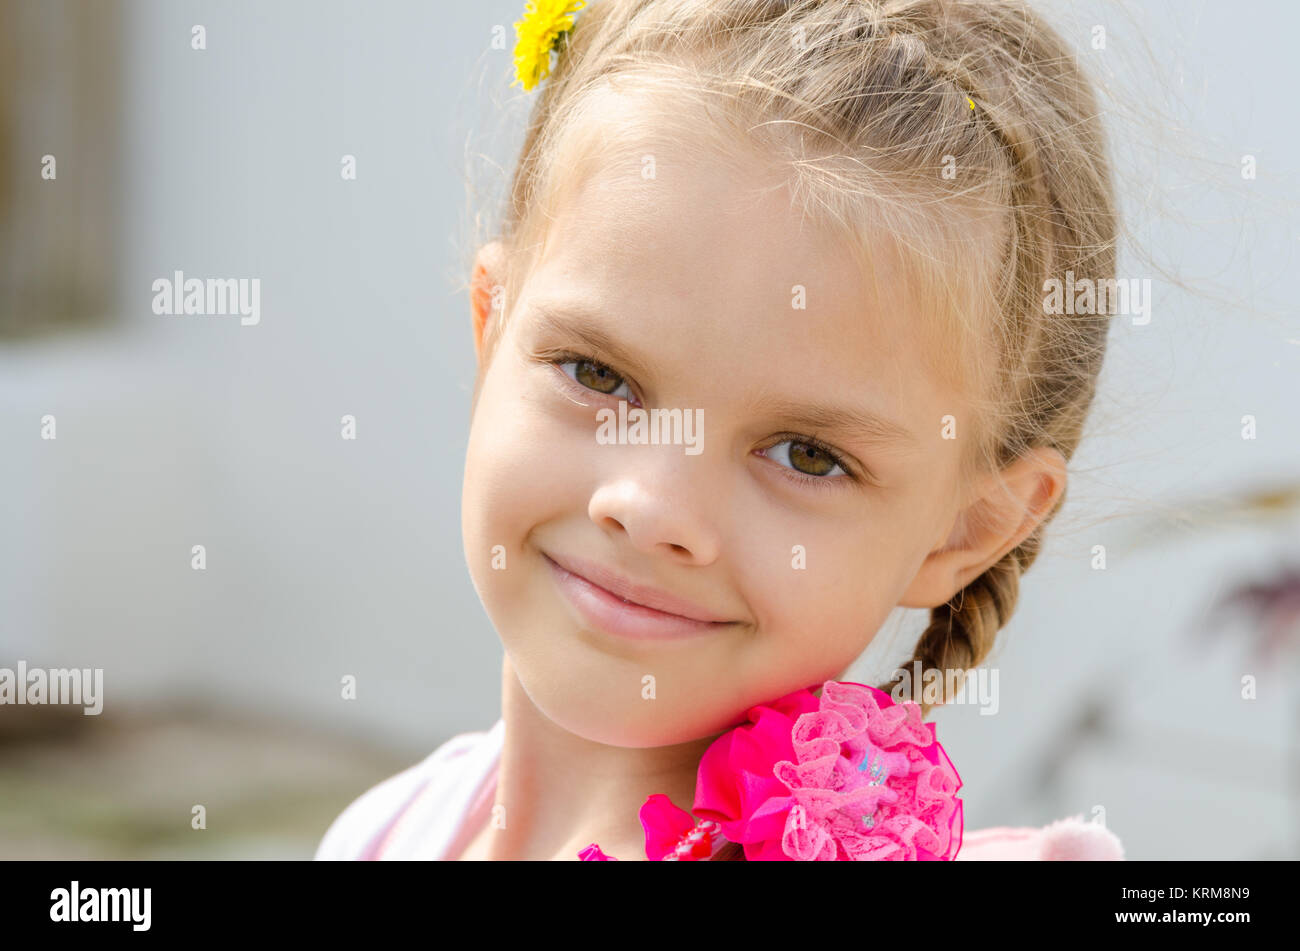 Close up retrato de adorable niña de 2 años